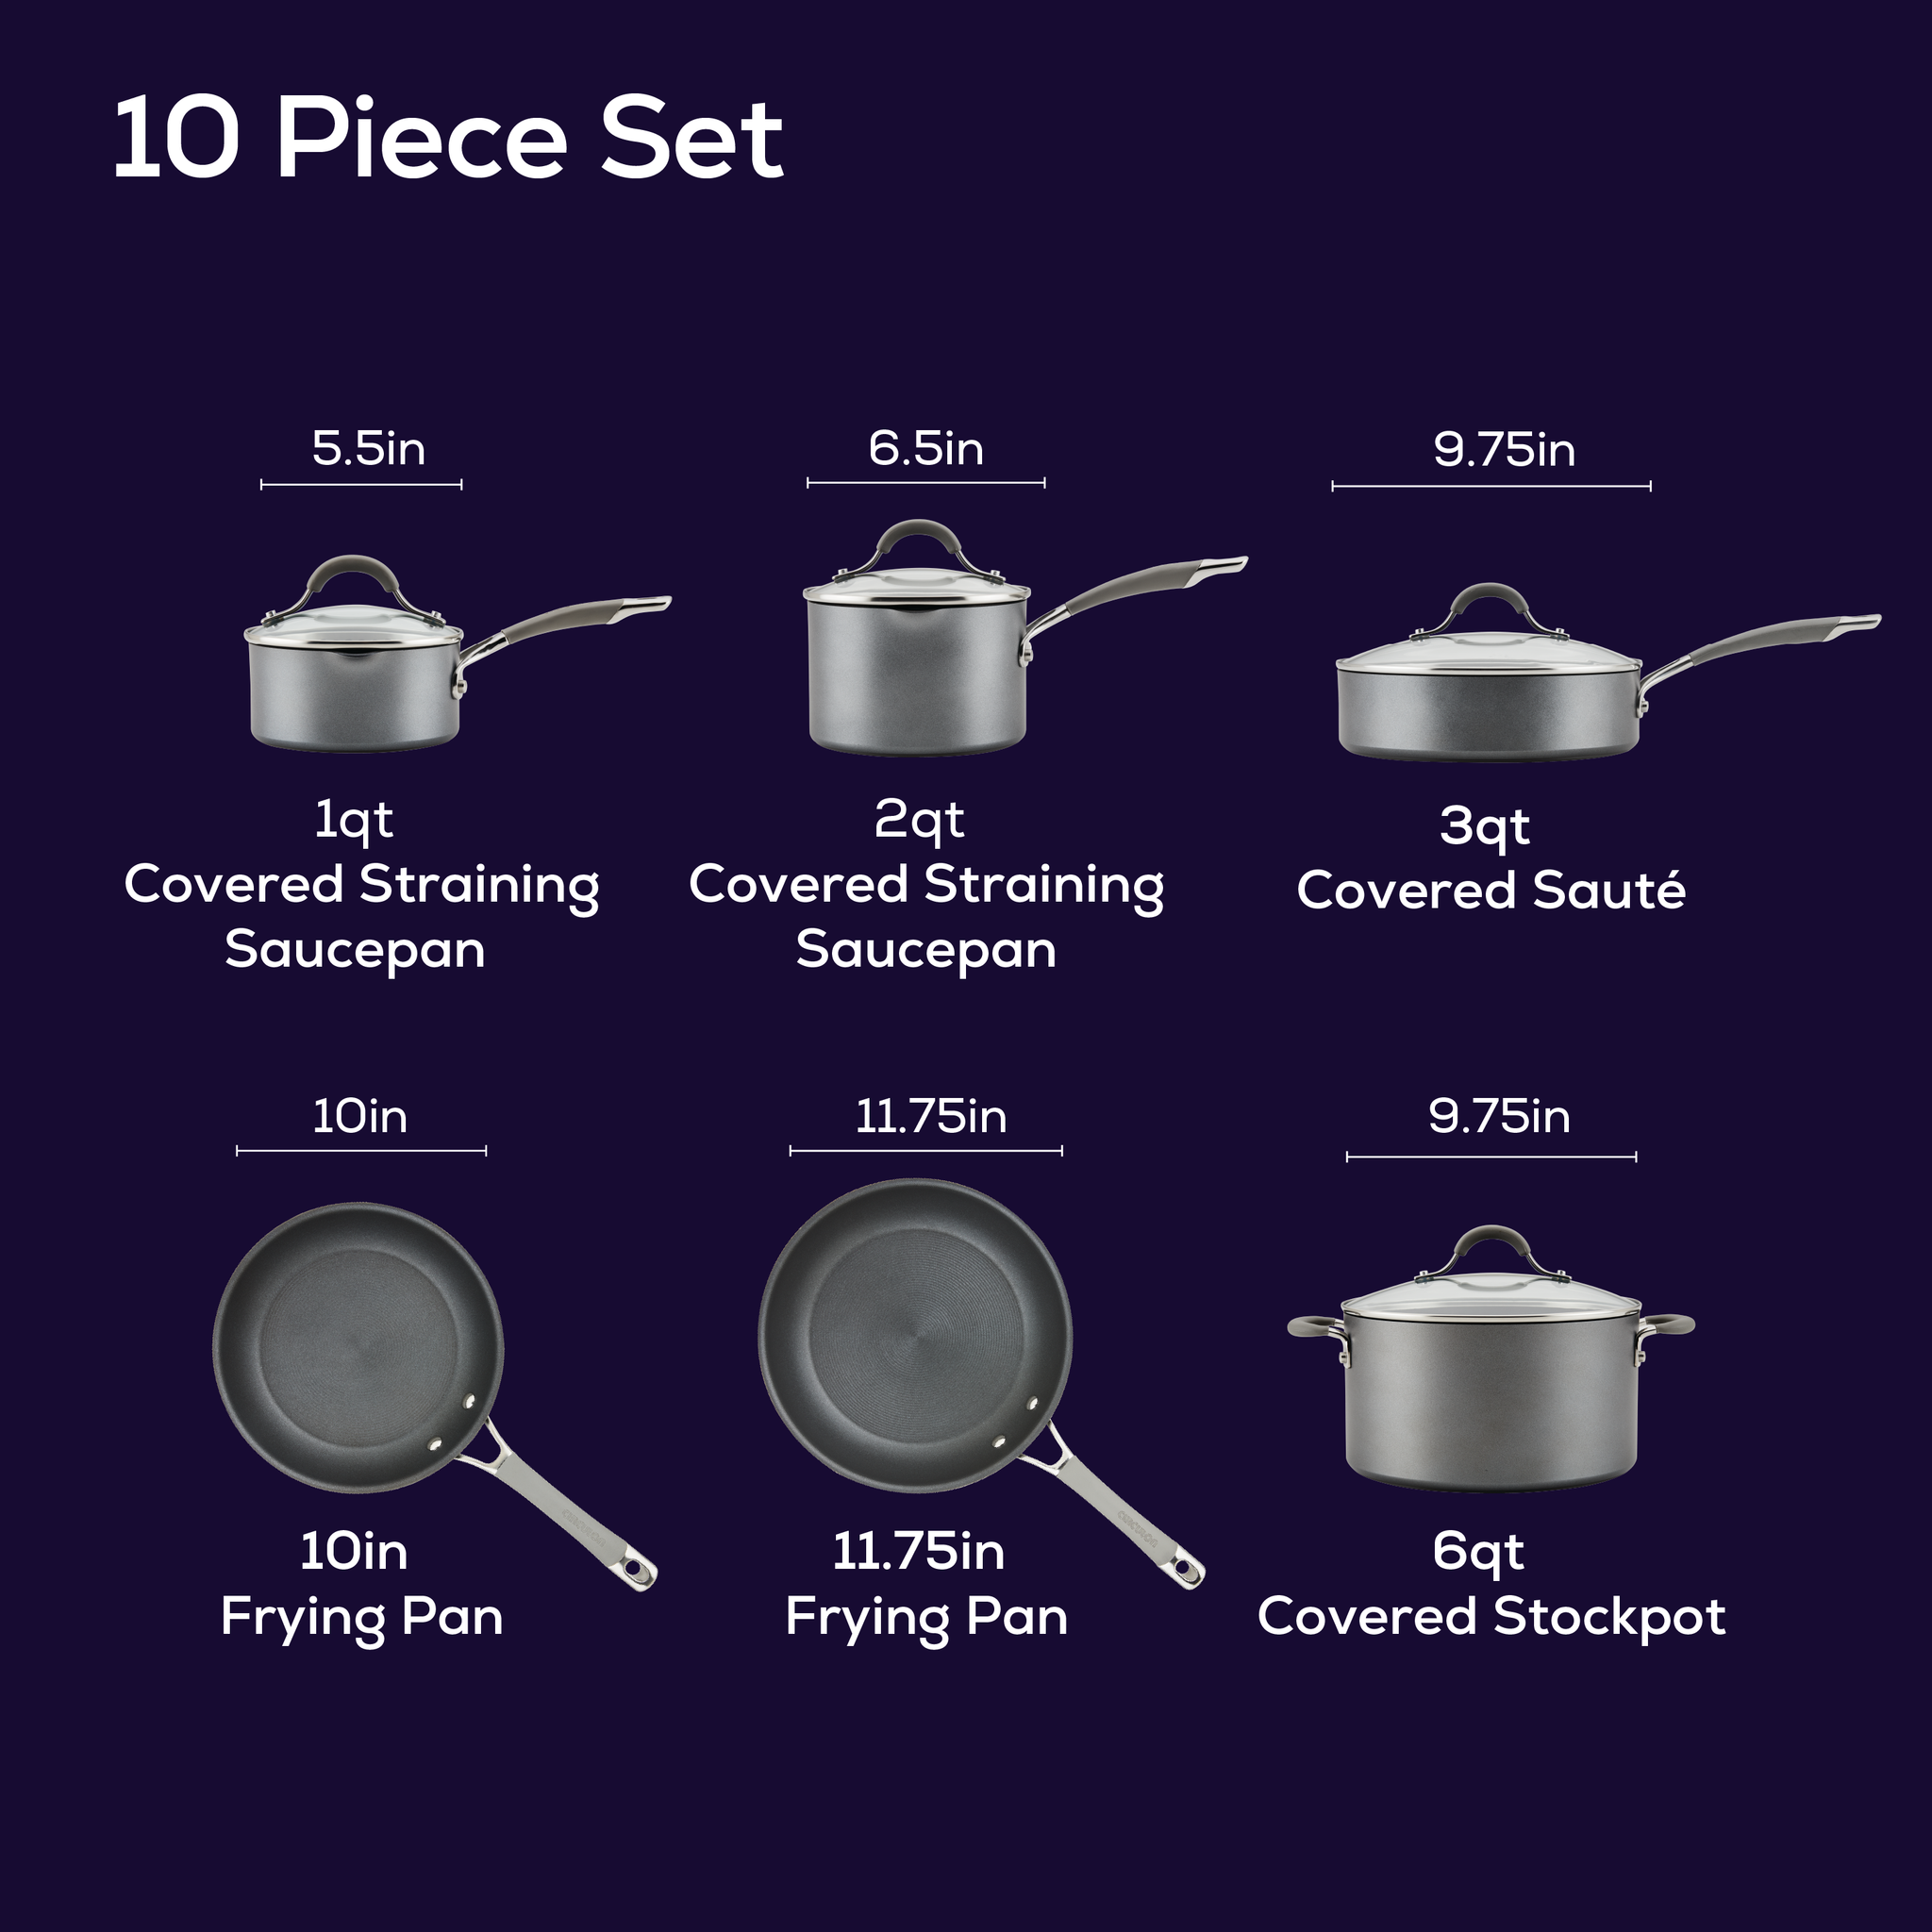 Circulon Elementum Hard-Anodized Nonstick Cookware Set - Gray, 1 - Gerbes  Super Markets